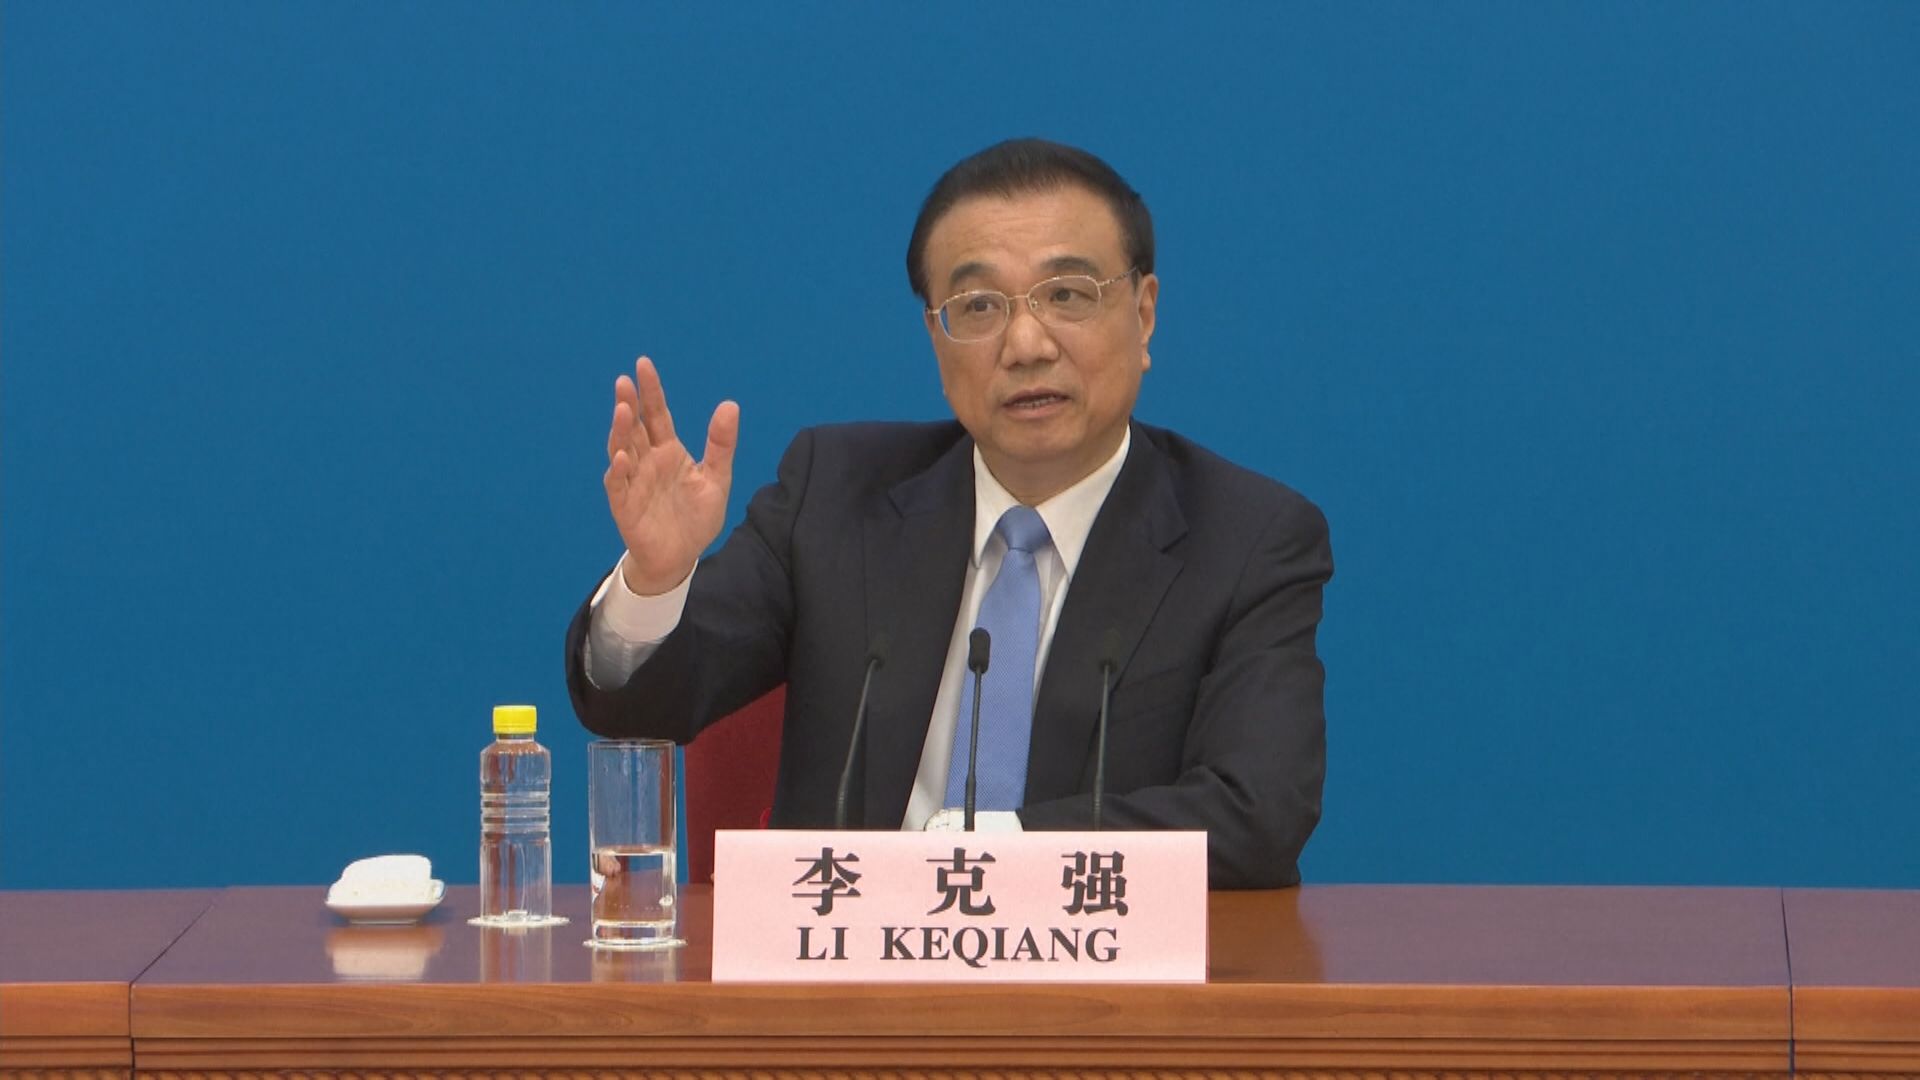 【共同富裕】李克強:中國對外開放政策沒變、不變